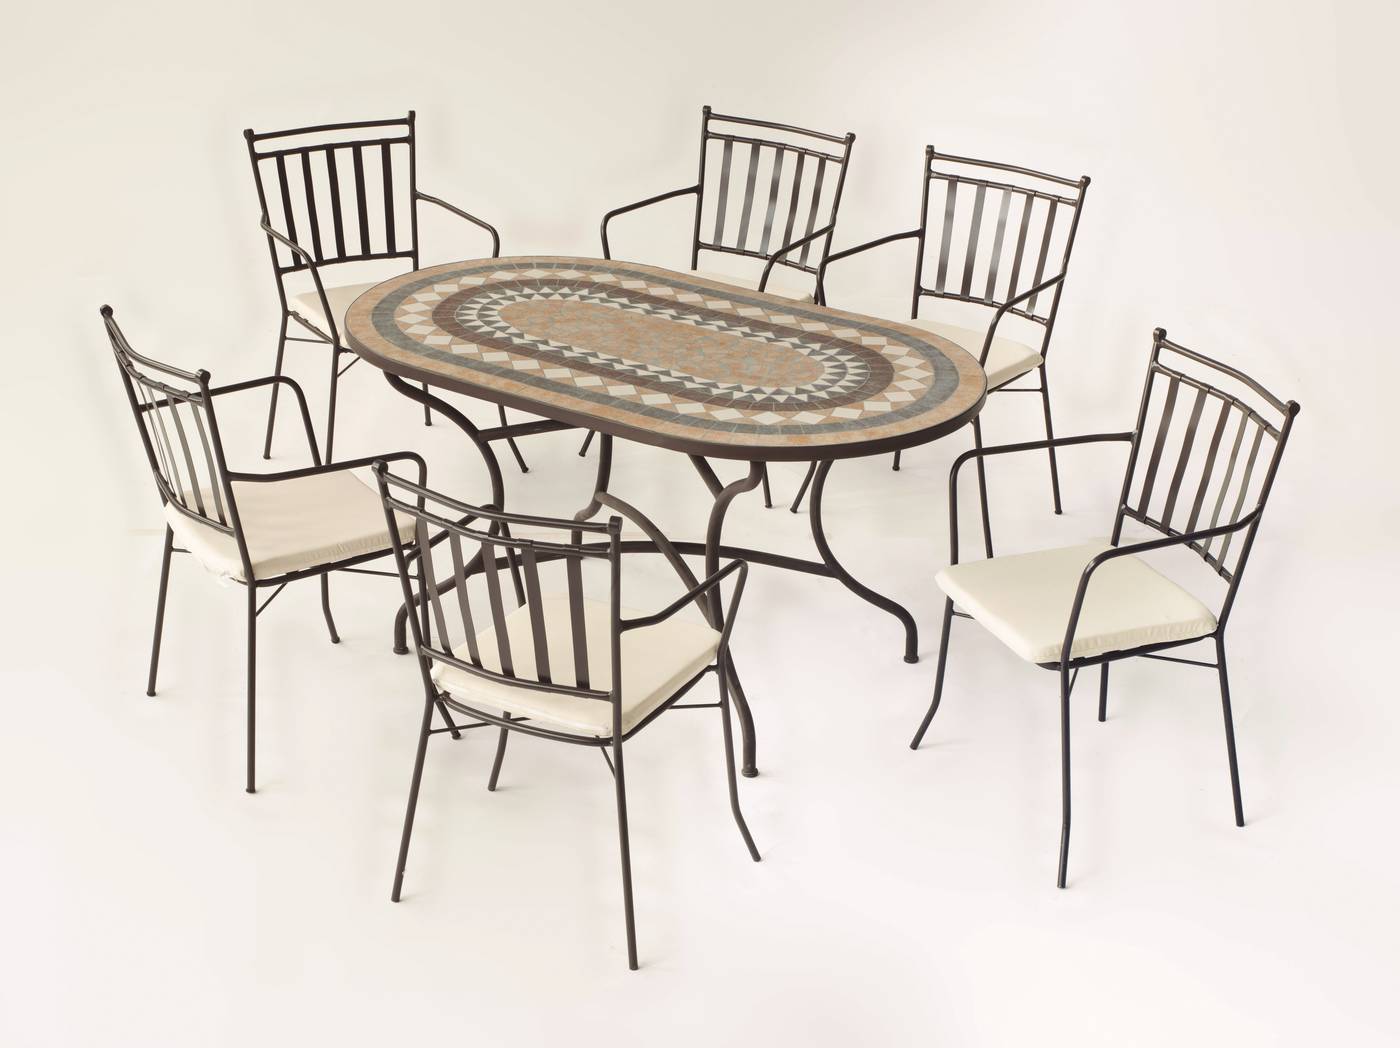 Conjunto Mosaico Laredo-Shifa - Conjunto de forja color bronce: mesa con tablero ovalado mosaico de 150 cm + 4 sillones con cojines.